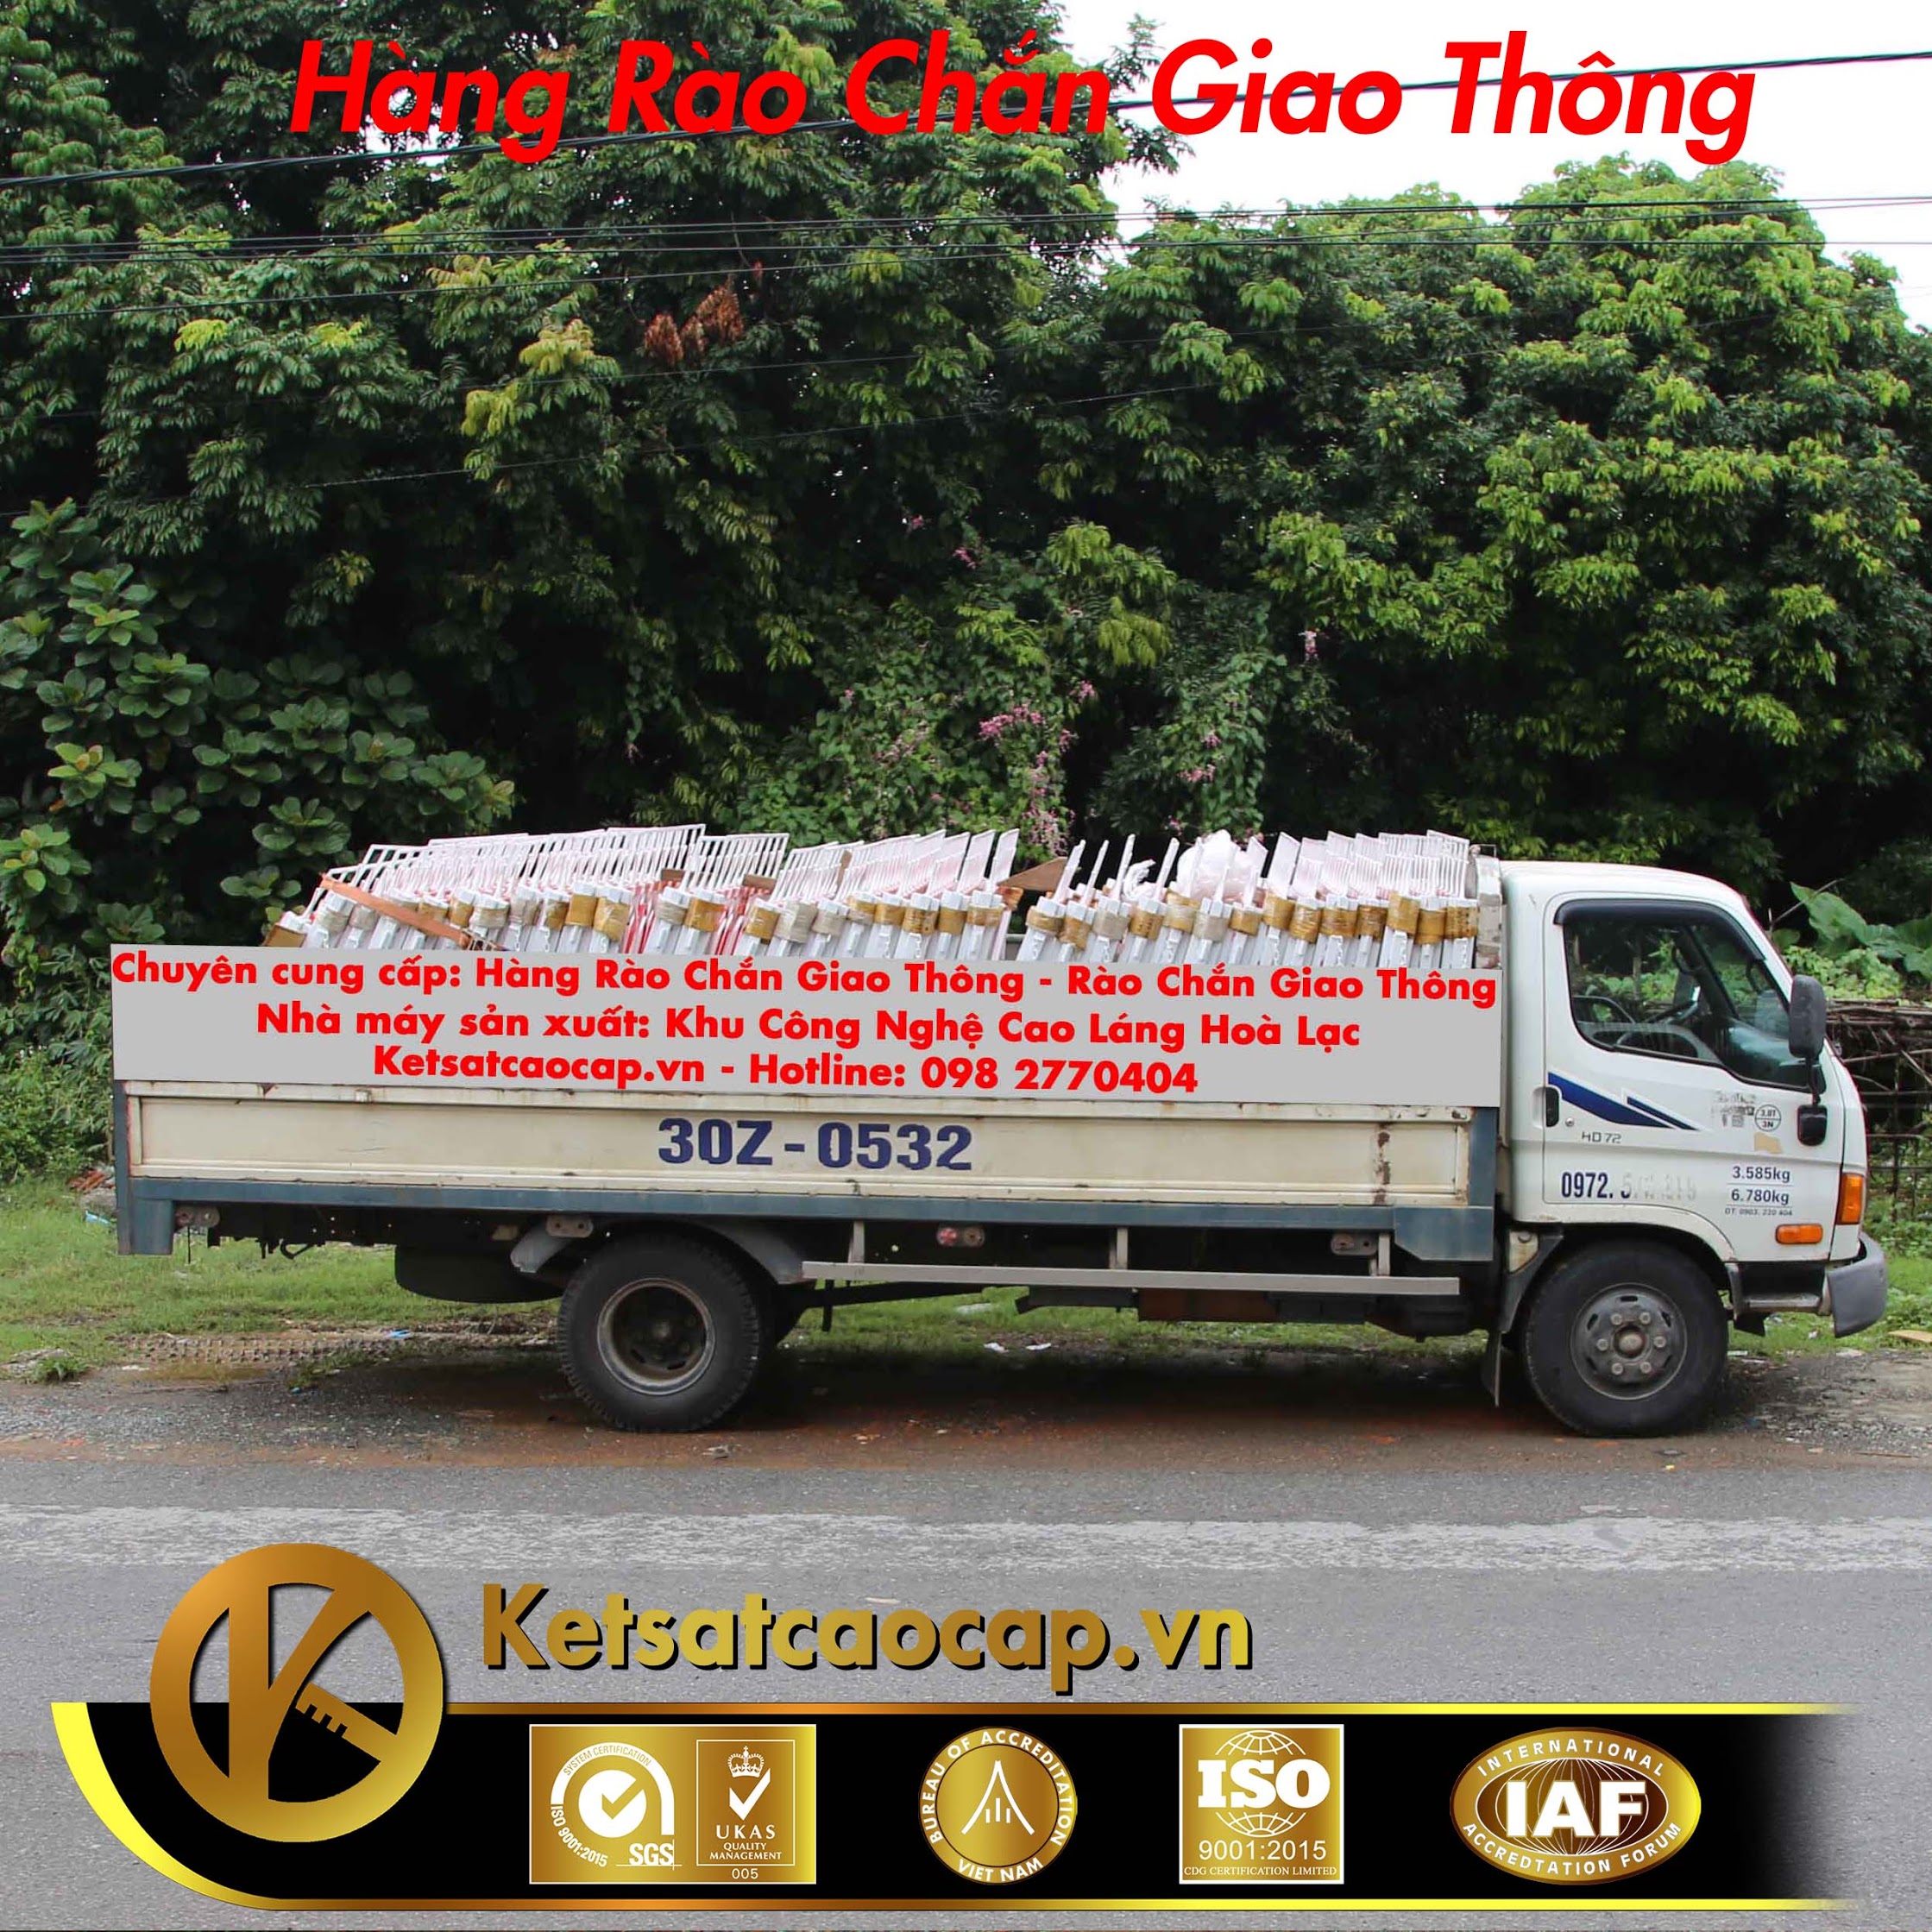 Rao Phan Luong Giao Thong